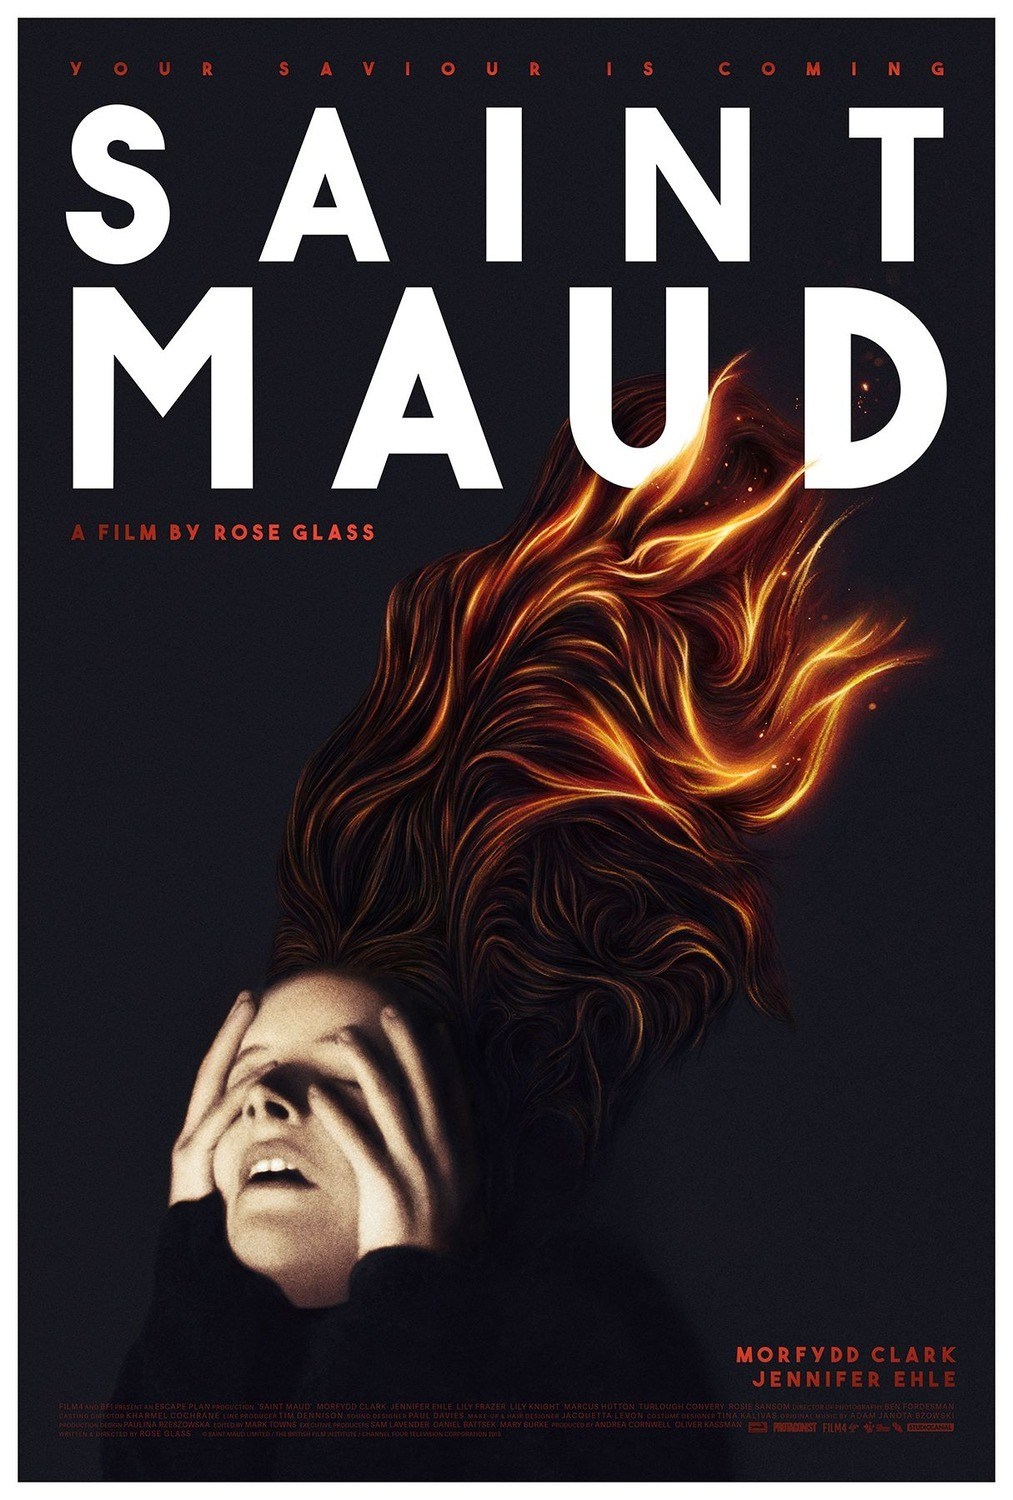 <p><strong>"Saint Maud" – Rose Glass</strong></p><p>Dünya prömiyerini 44. Toronto Film Festivali'nde yapan korku filmi "Saint Maud"un yönetmenliğini Rose Glass üstleniyor.</p><p>Glass'ın ilk uzun metrajı olan filmin başrollerinde Jennifer Ehle ve&nbsp; Morfydd Clark yer alıyor. Film, bir bakımevi hemşiresi olan Maud ve kanser olan hastası Amanda'nın hikâyesini konu alıyor.</p>